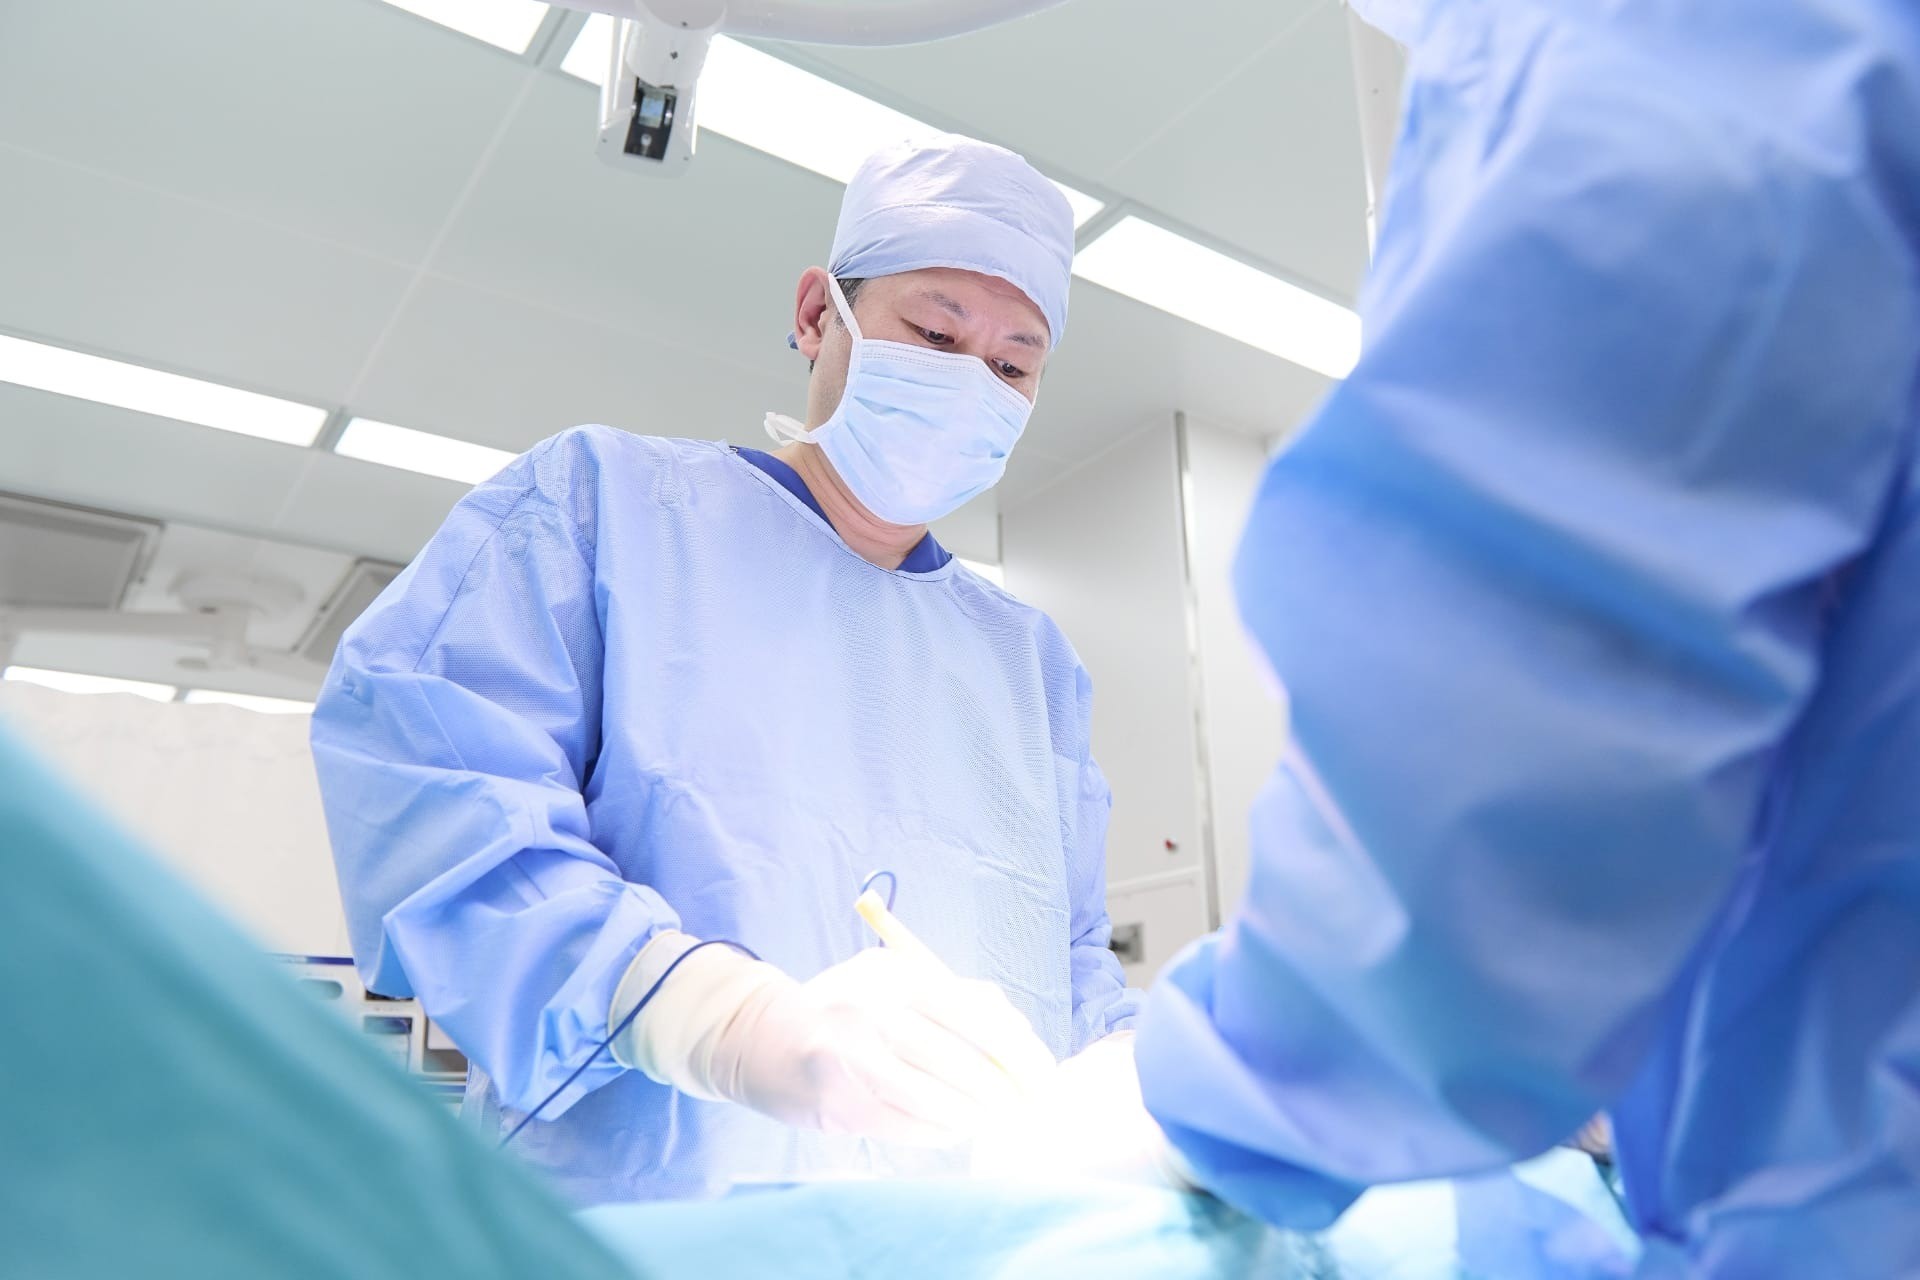 神奈川県央エリアを牽引する外科医を育て、地域に貢献する